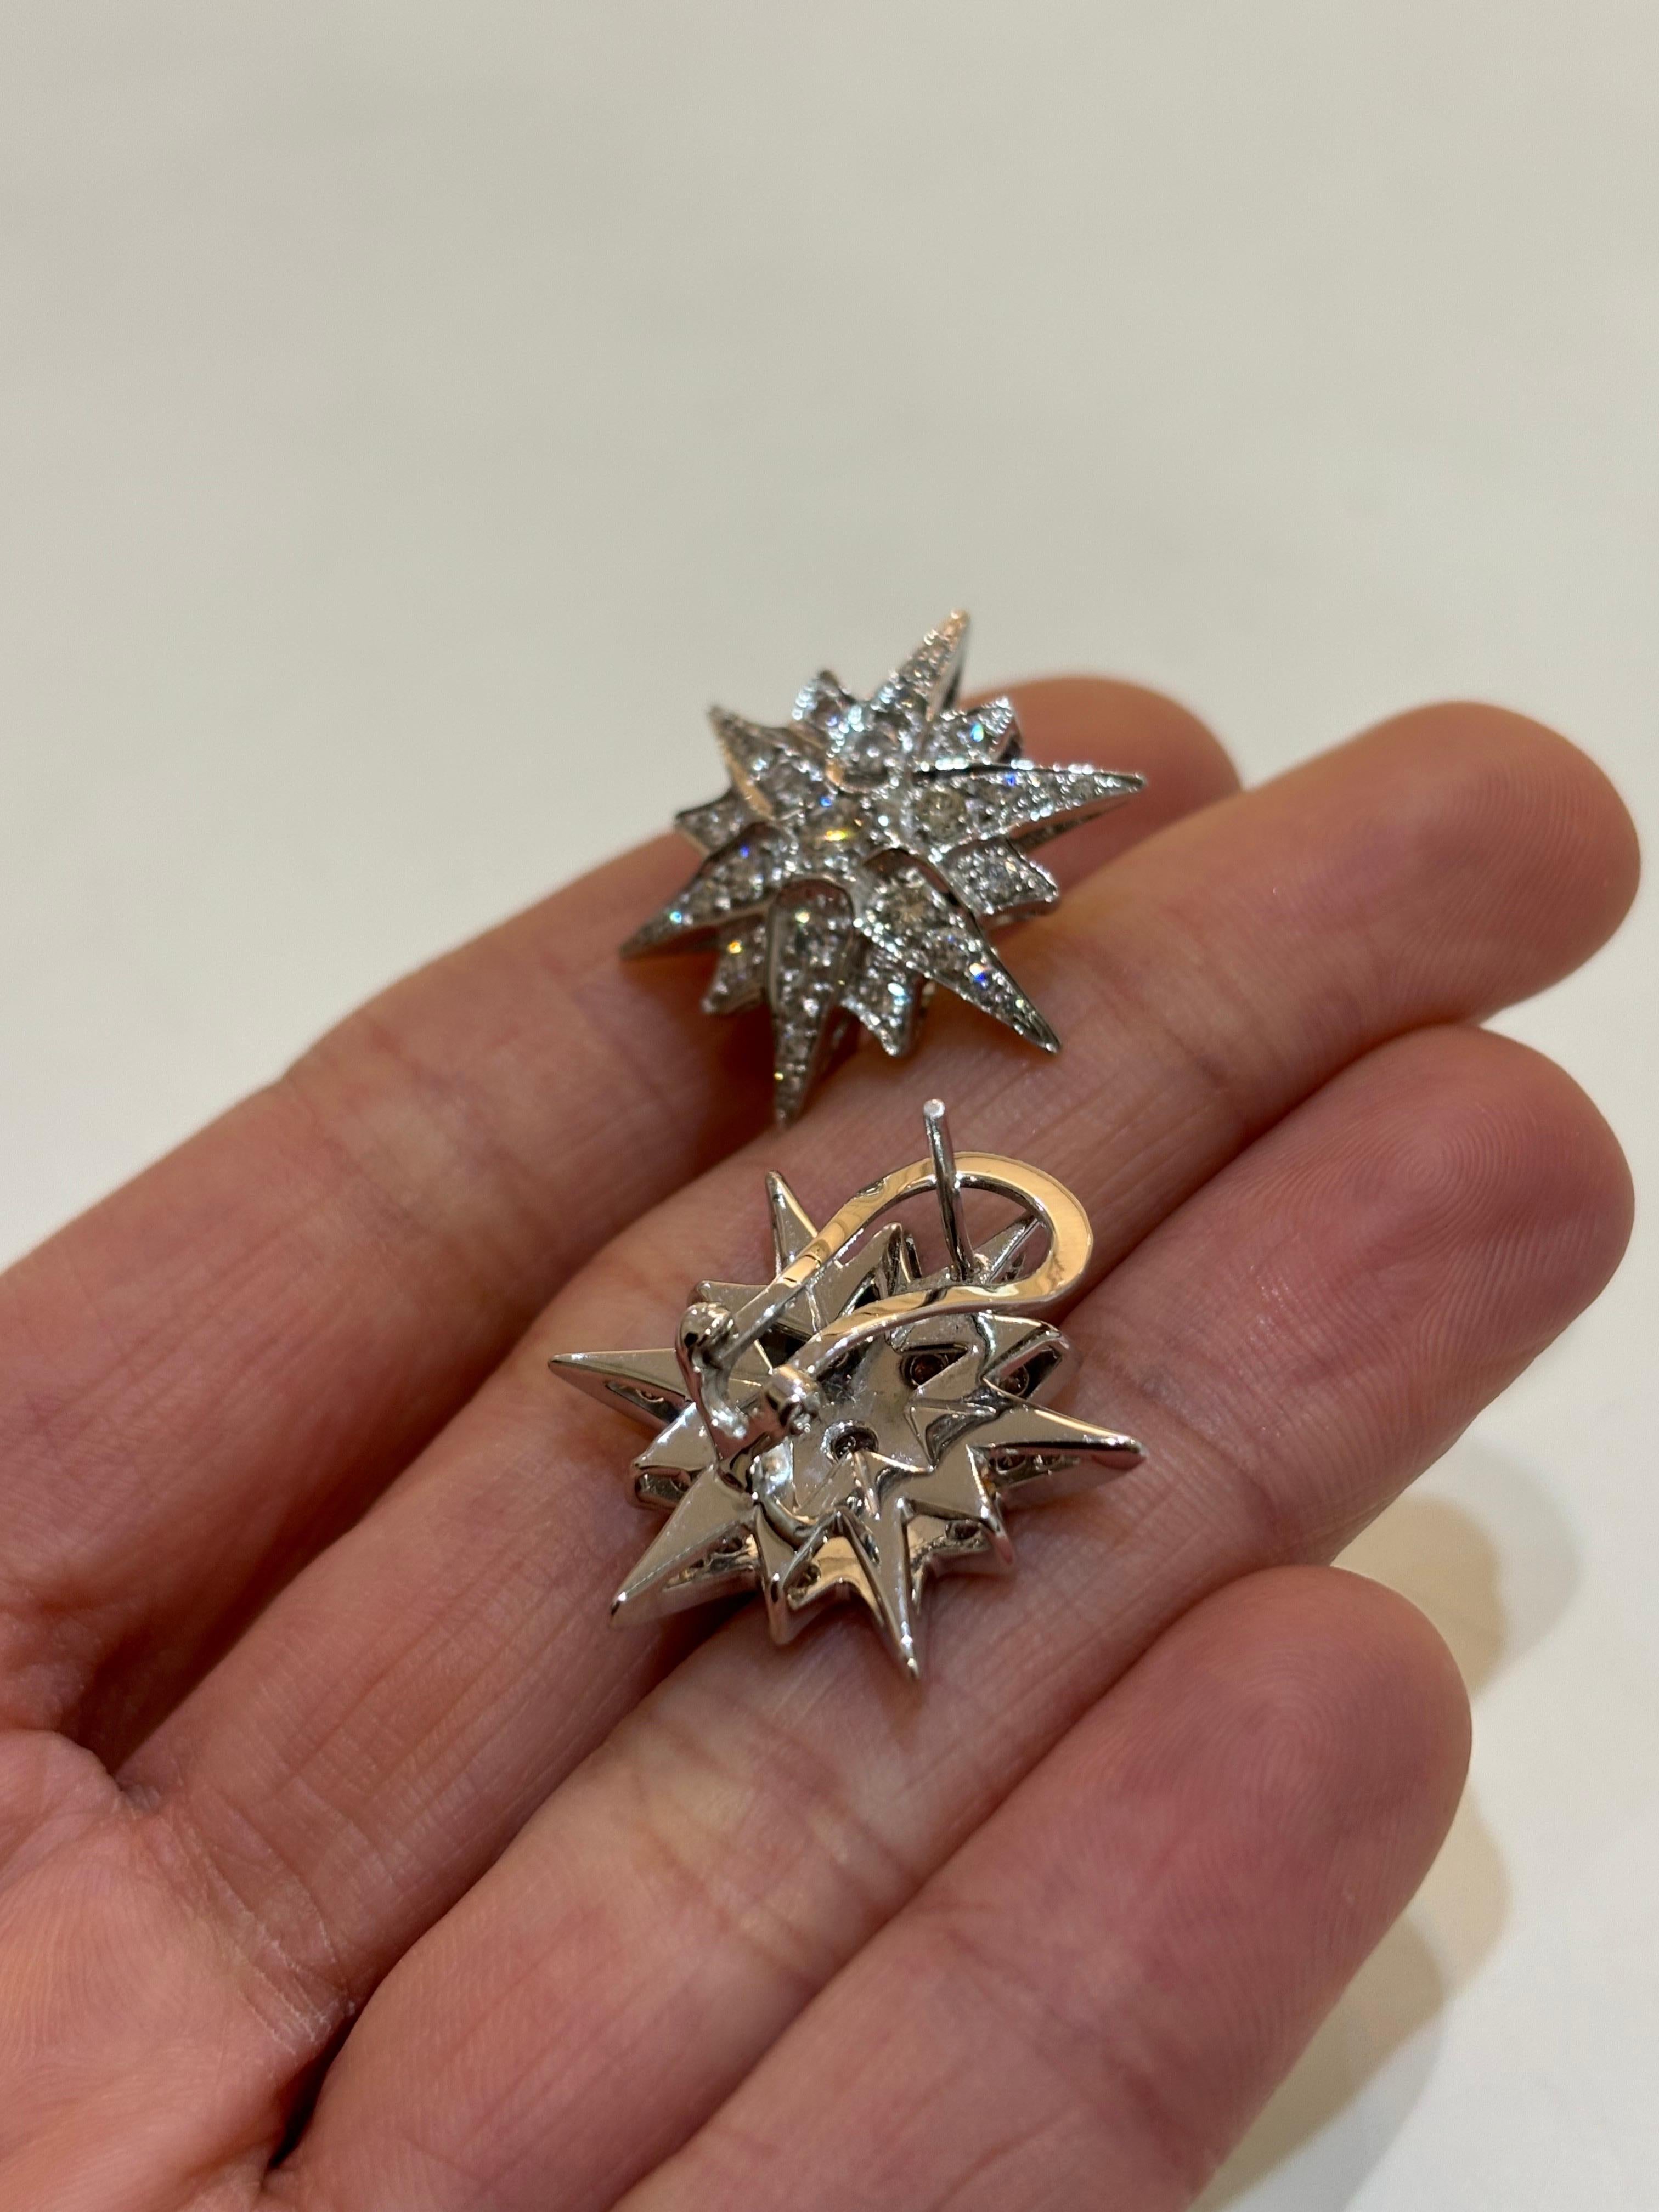 Magnifiques clous d'oreilles en forme d'étoile en or 14K et diamants, fabriqués à la main, avec un support à levier. Au total, 1,5 carats de diamants blancs taillés en brillant sont utilisés. 
Les frais de port sont gratuits et les retours sont